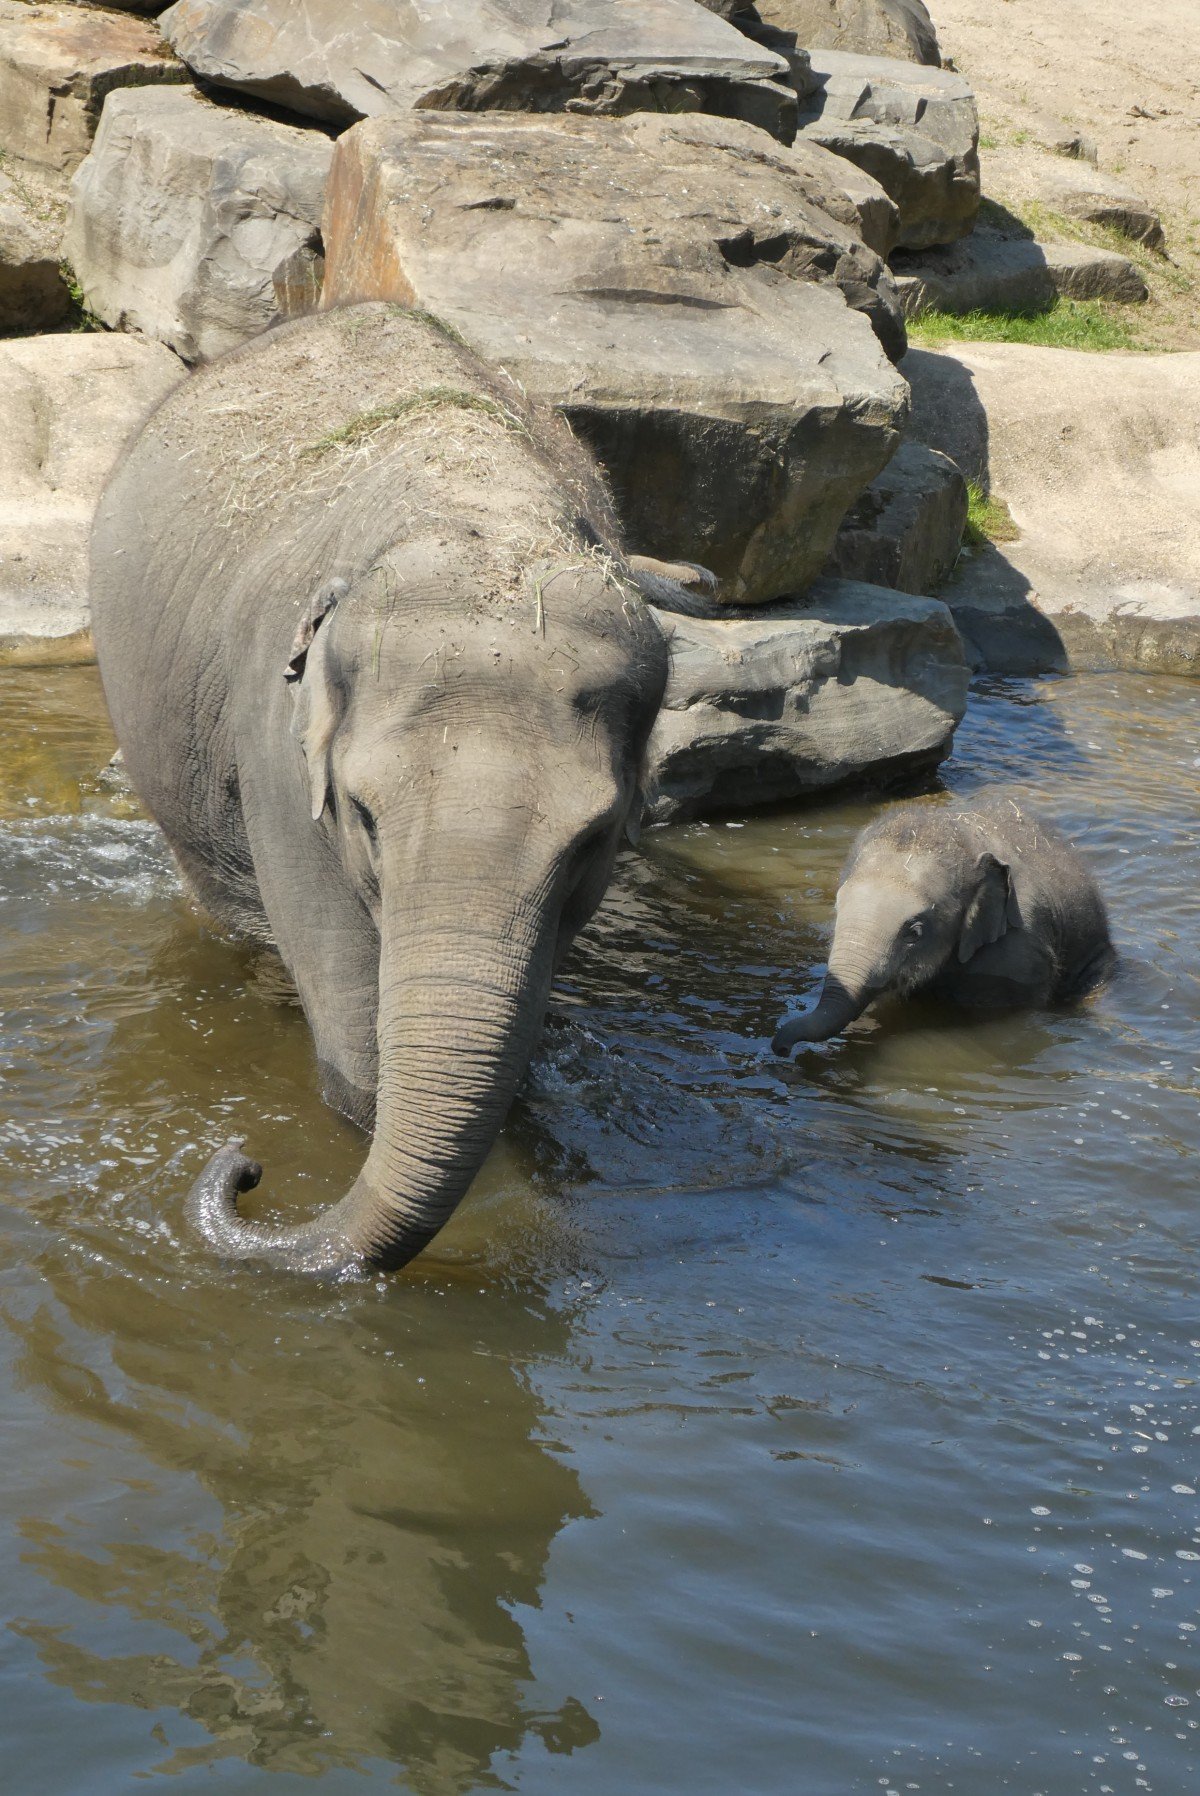 Elefante sumergido en el agua junto a su cría. | Imagen: PxHere